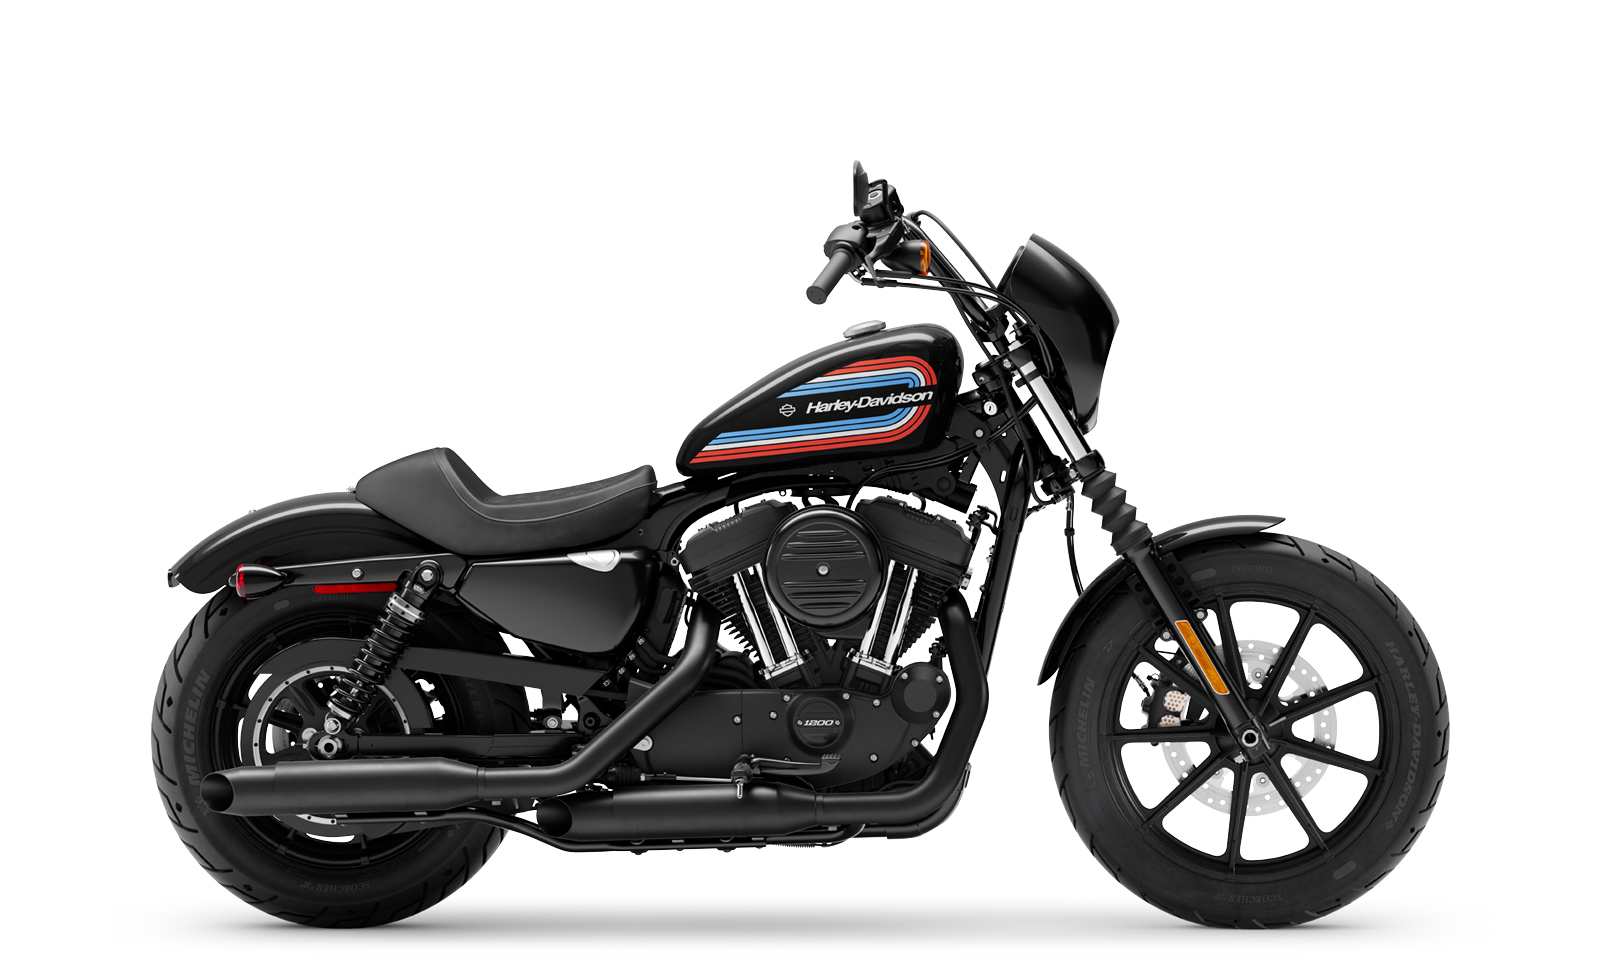 2020 Iron 1200 Motorcycle Harley Davidson Europe